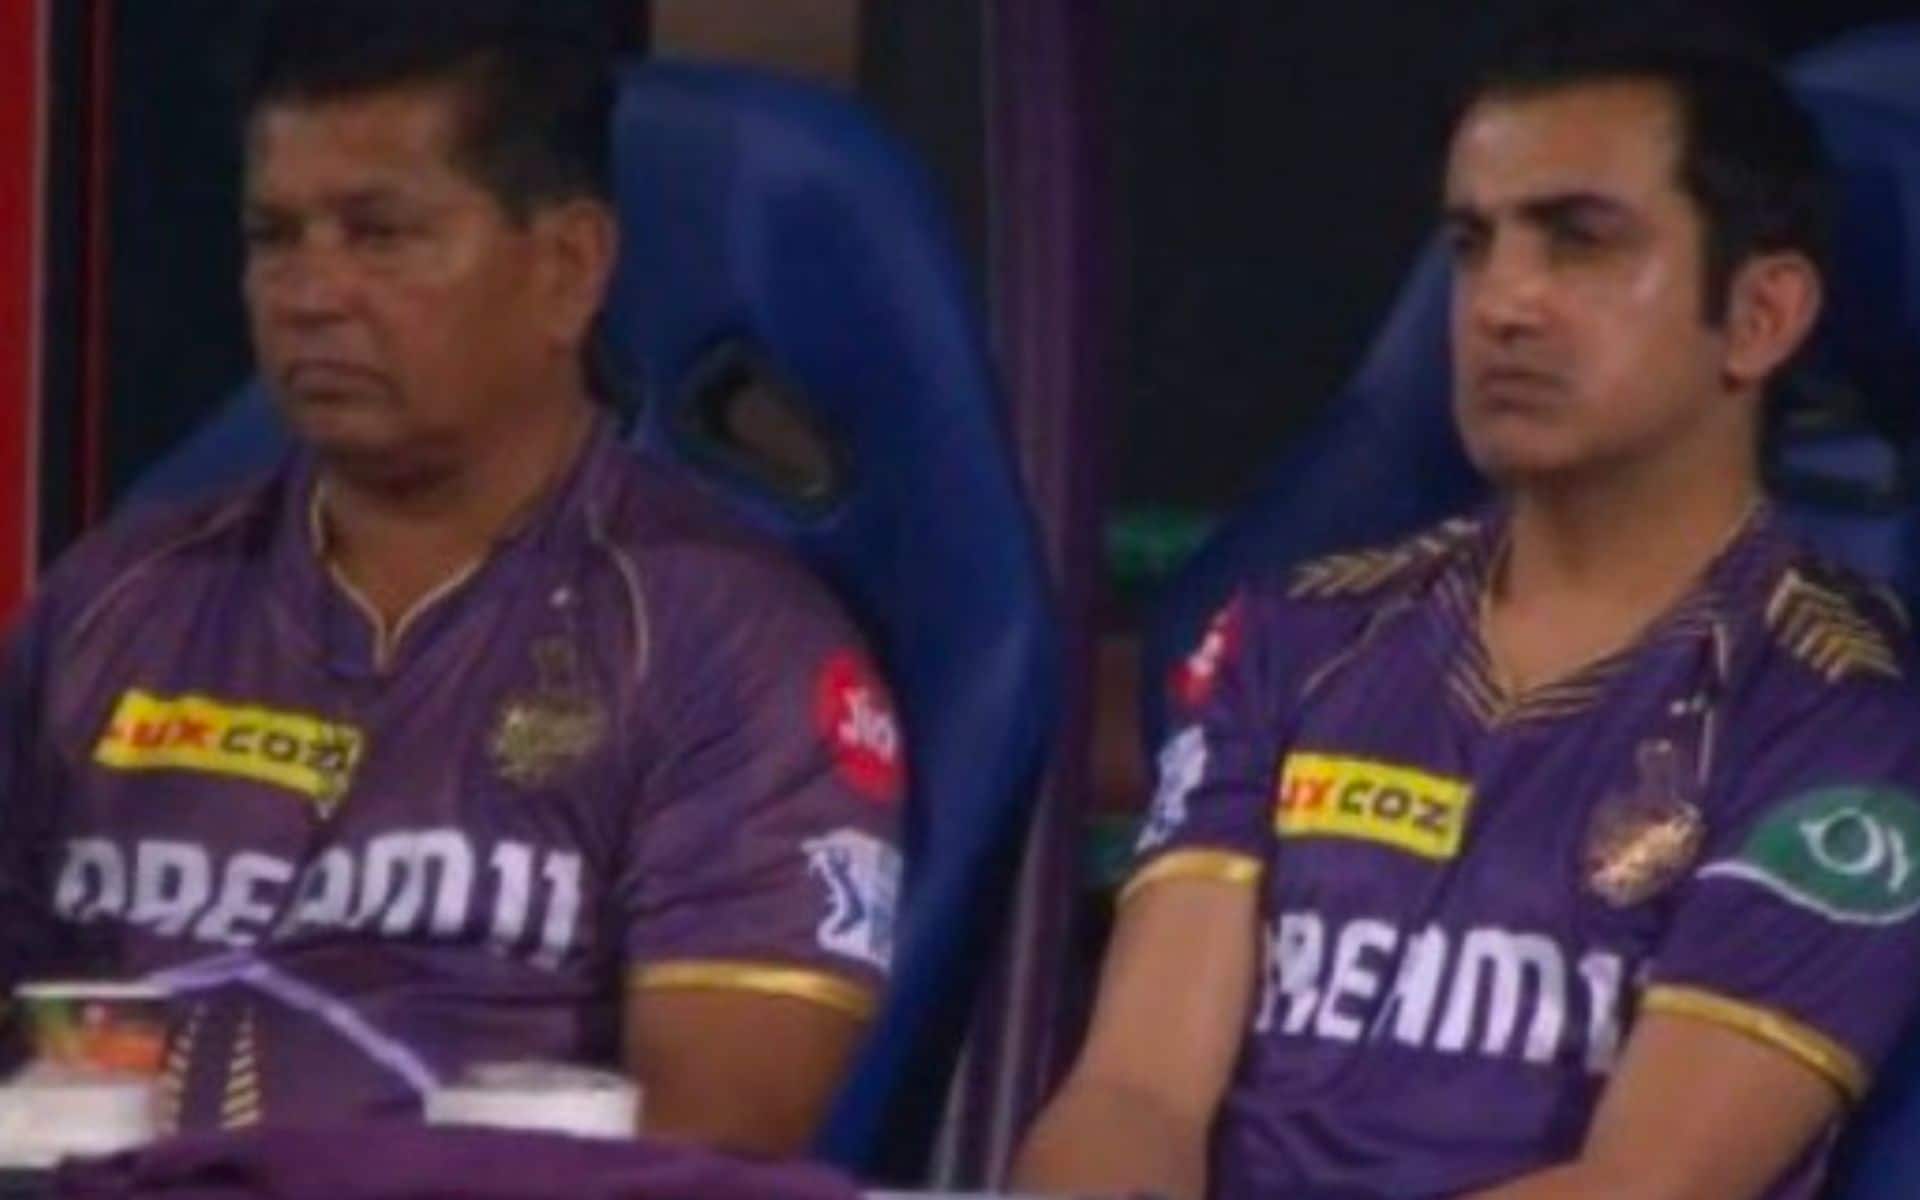 Gautam Gambhir looked visibly angry at the team (X.com)